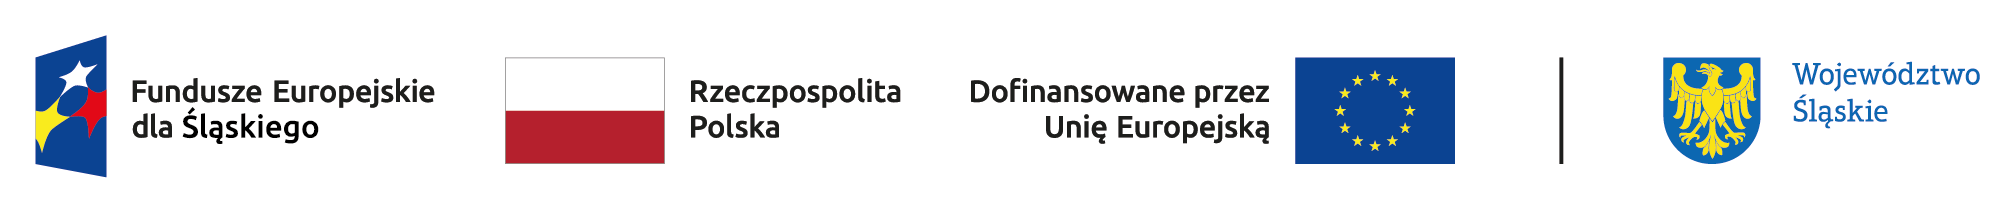 Logotypy programu Fundusze Europejskie dla Śląskiego: od lewej symbol Funduszy Europejskich, flaga Rzeczypospolitej Polski, flaga Unii Europejskiej z dopiskiem 